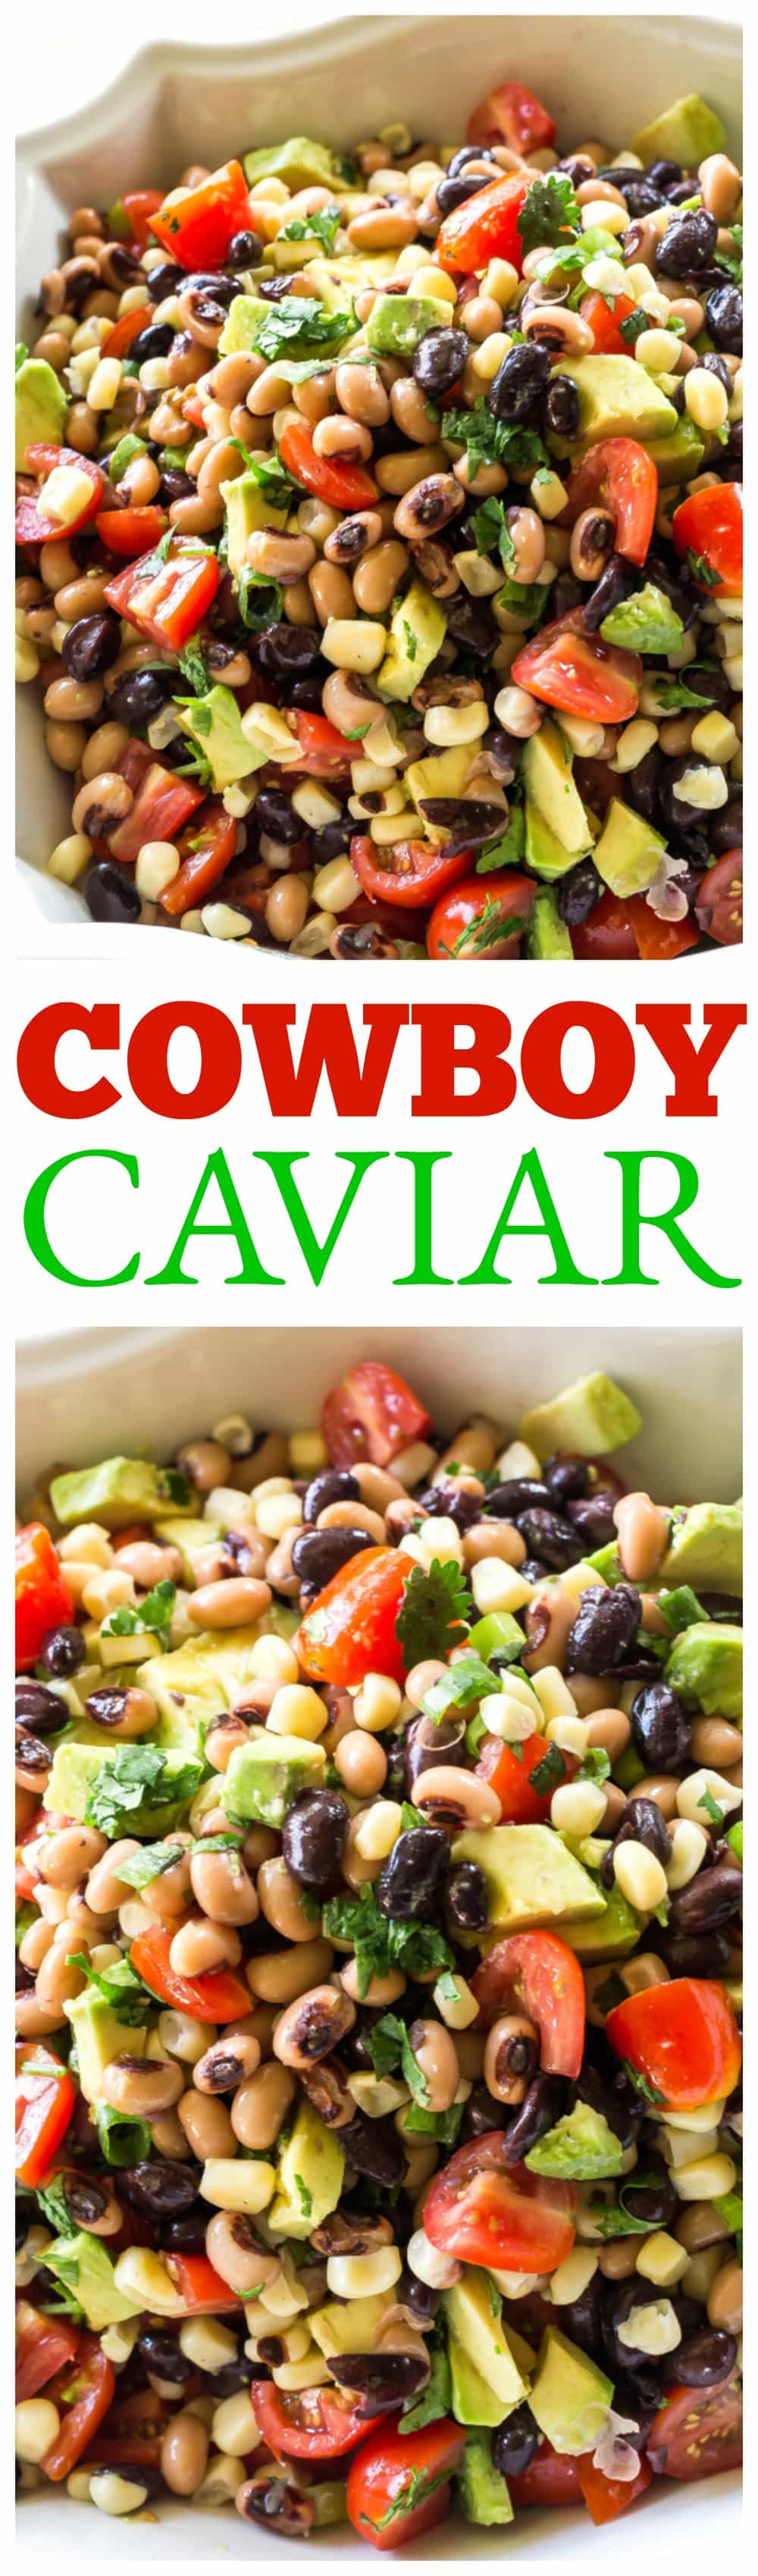 Cowboy Caviar é uma das minhas receitas favoritas para levar para uma festa ou churrasco.  Feijão preto, feijão fradinho, abacate, tomate e milho em um molho italiano leve e picante.  Coma com batatas fritas ou apenas com um garfo!  #cowboy #caviar #potluck #side #bbq #salad